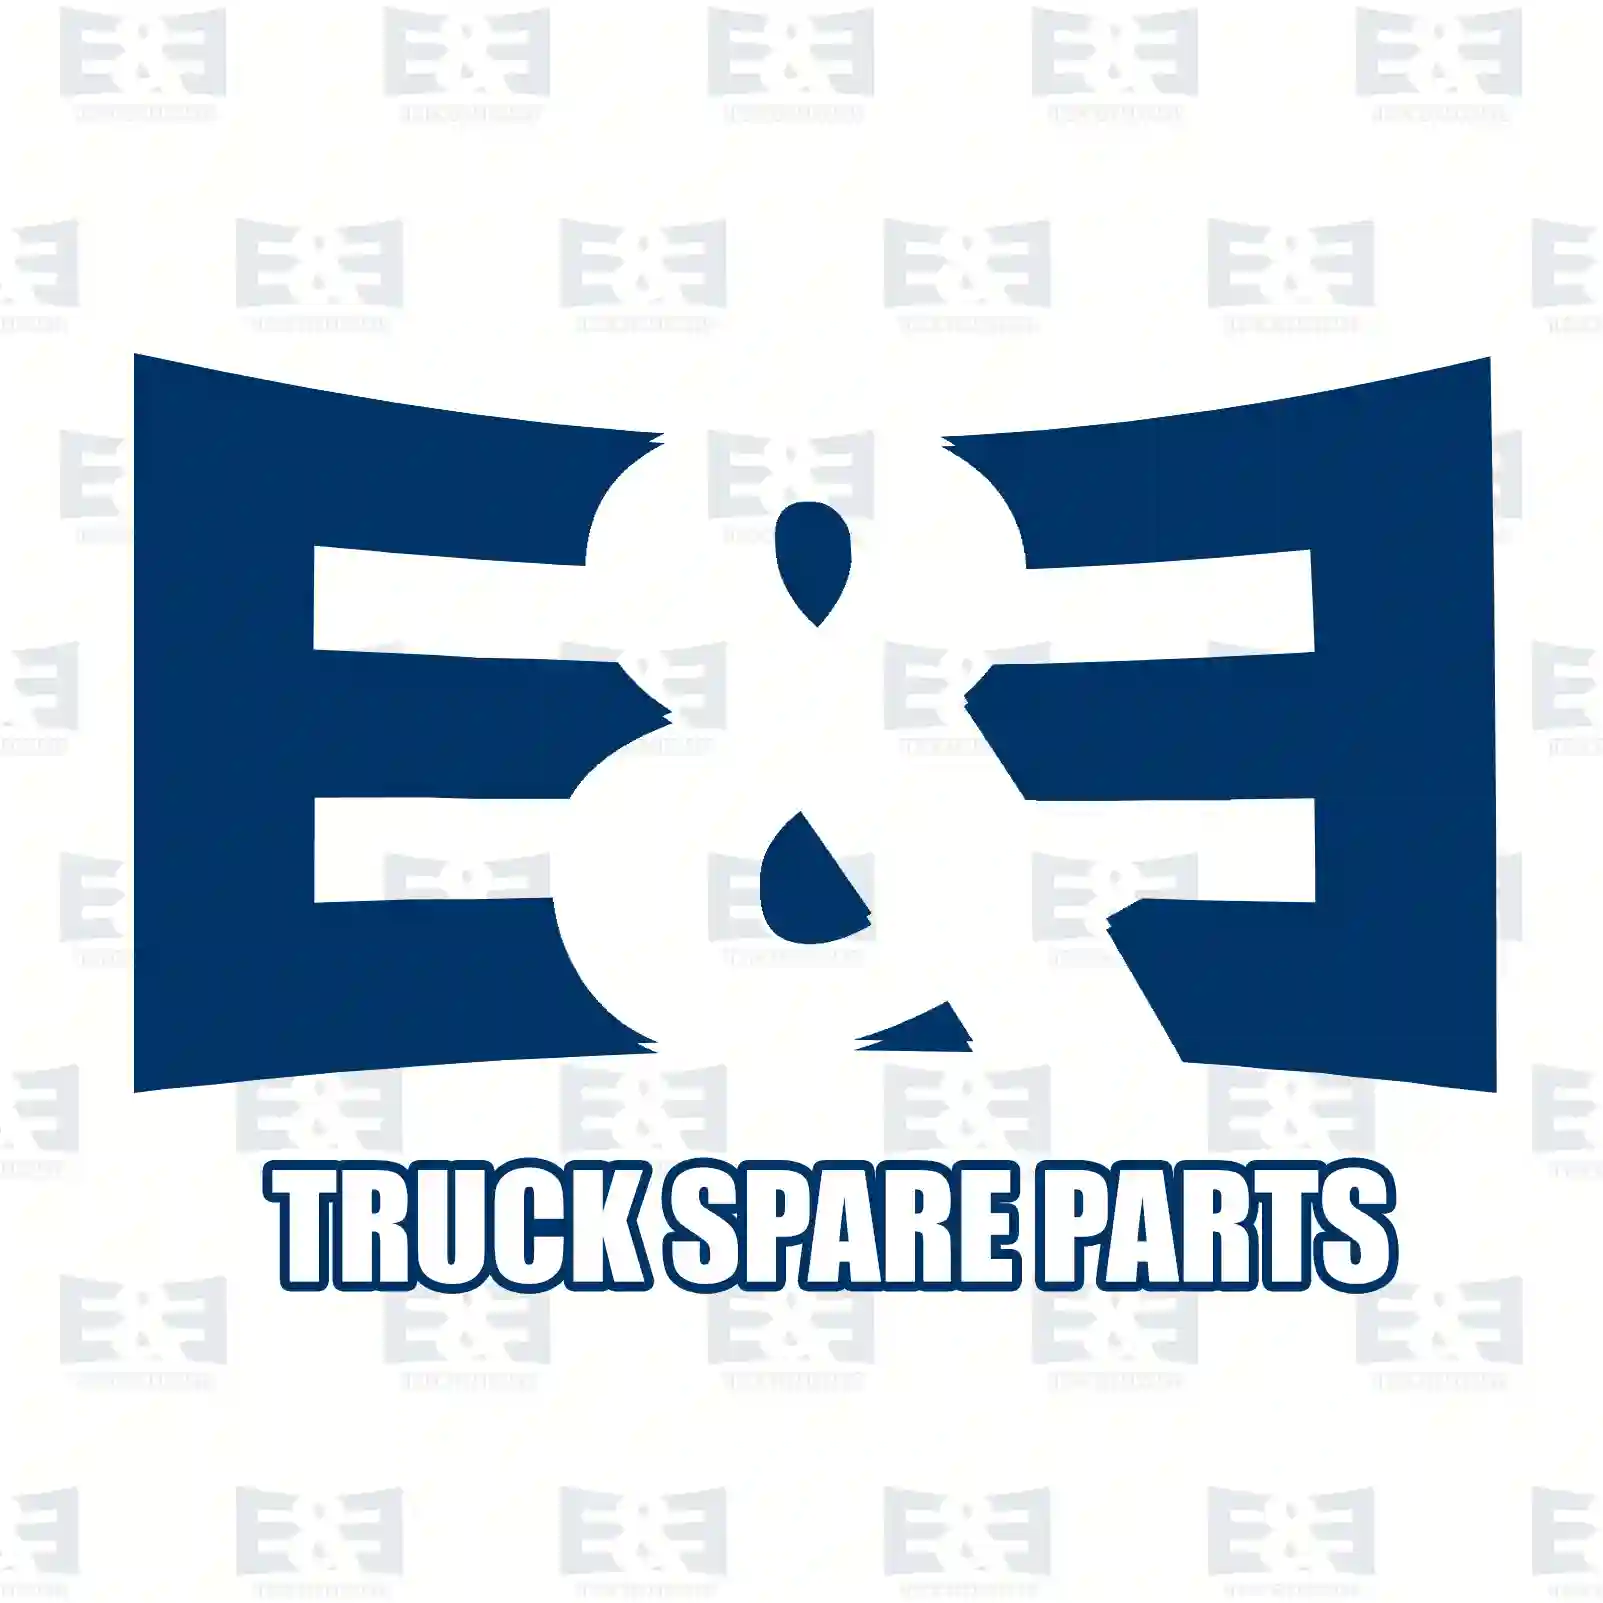 Exhaust brake, complete, 2E2208169, 1387316 ||  2E2208169 E&E Truck Spare Parts | Truck Spare Parts, Auotomotive Spare Parts Exhaust brake, complete, 2E2208169, 1387316 ||  2E2208169 E&E Truck Spare Parts | Truck Spare Parts, Auotomotive Spare Parts